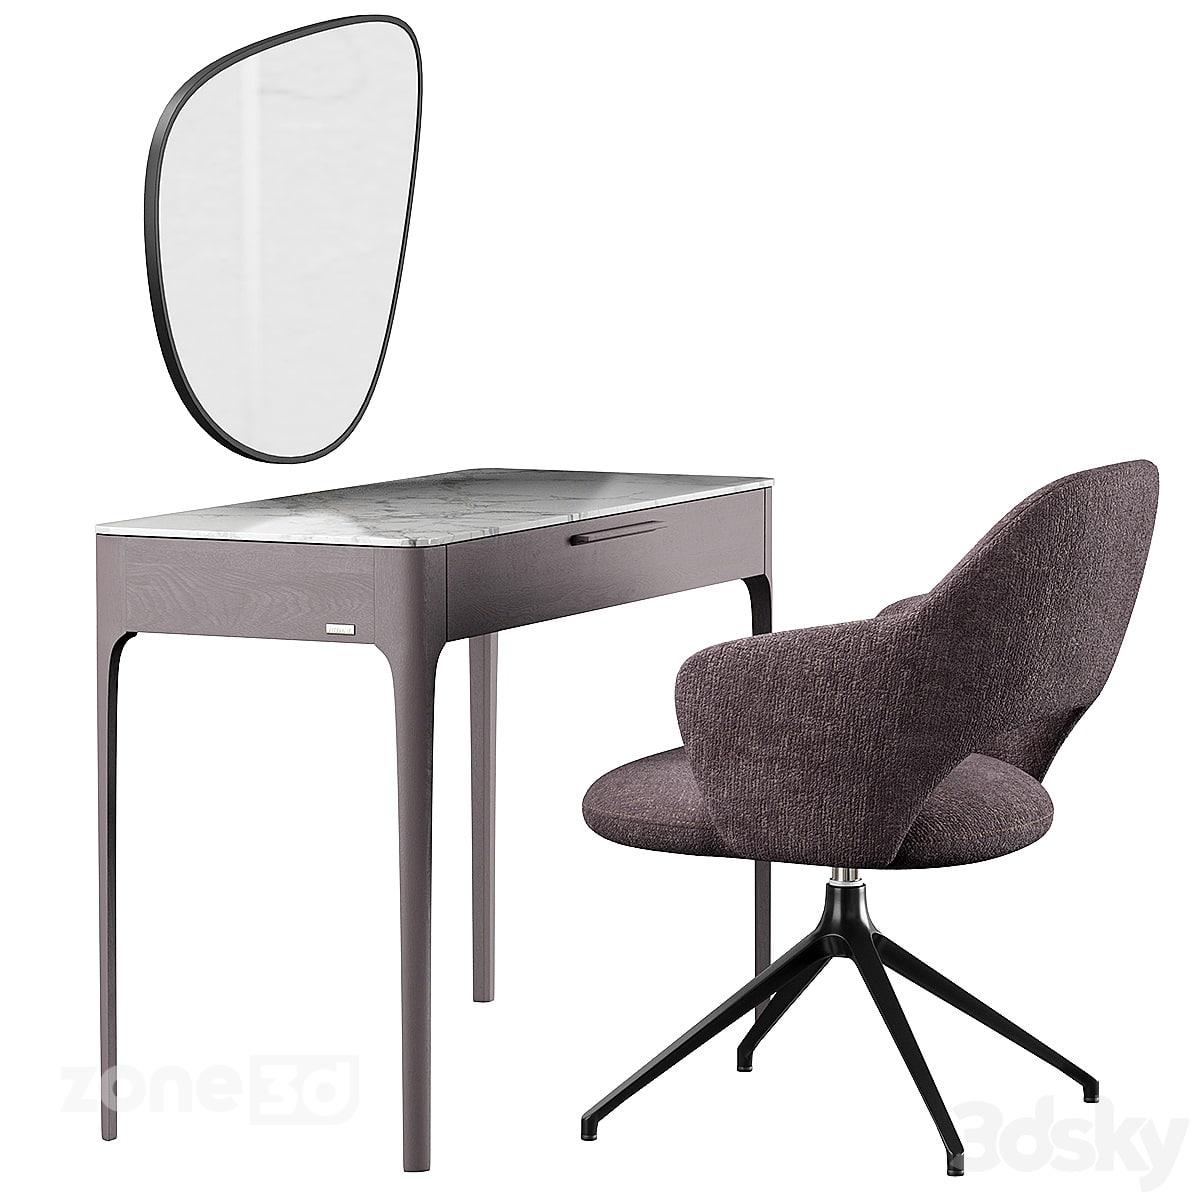 آبجکت میز آرایش مدرن چوبی با رویه سنگی به همراه آیینه و صندلی پارچه ای مدل Mara